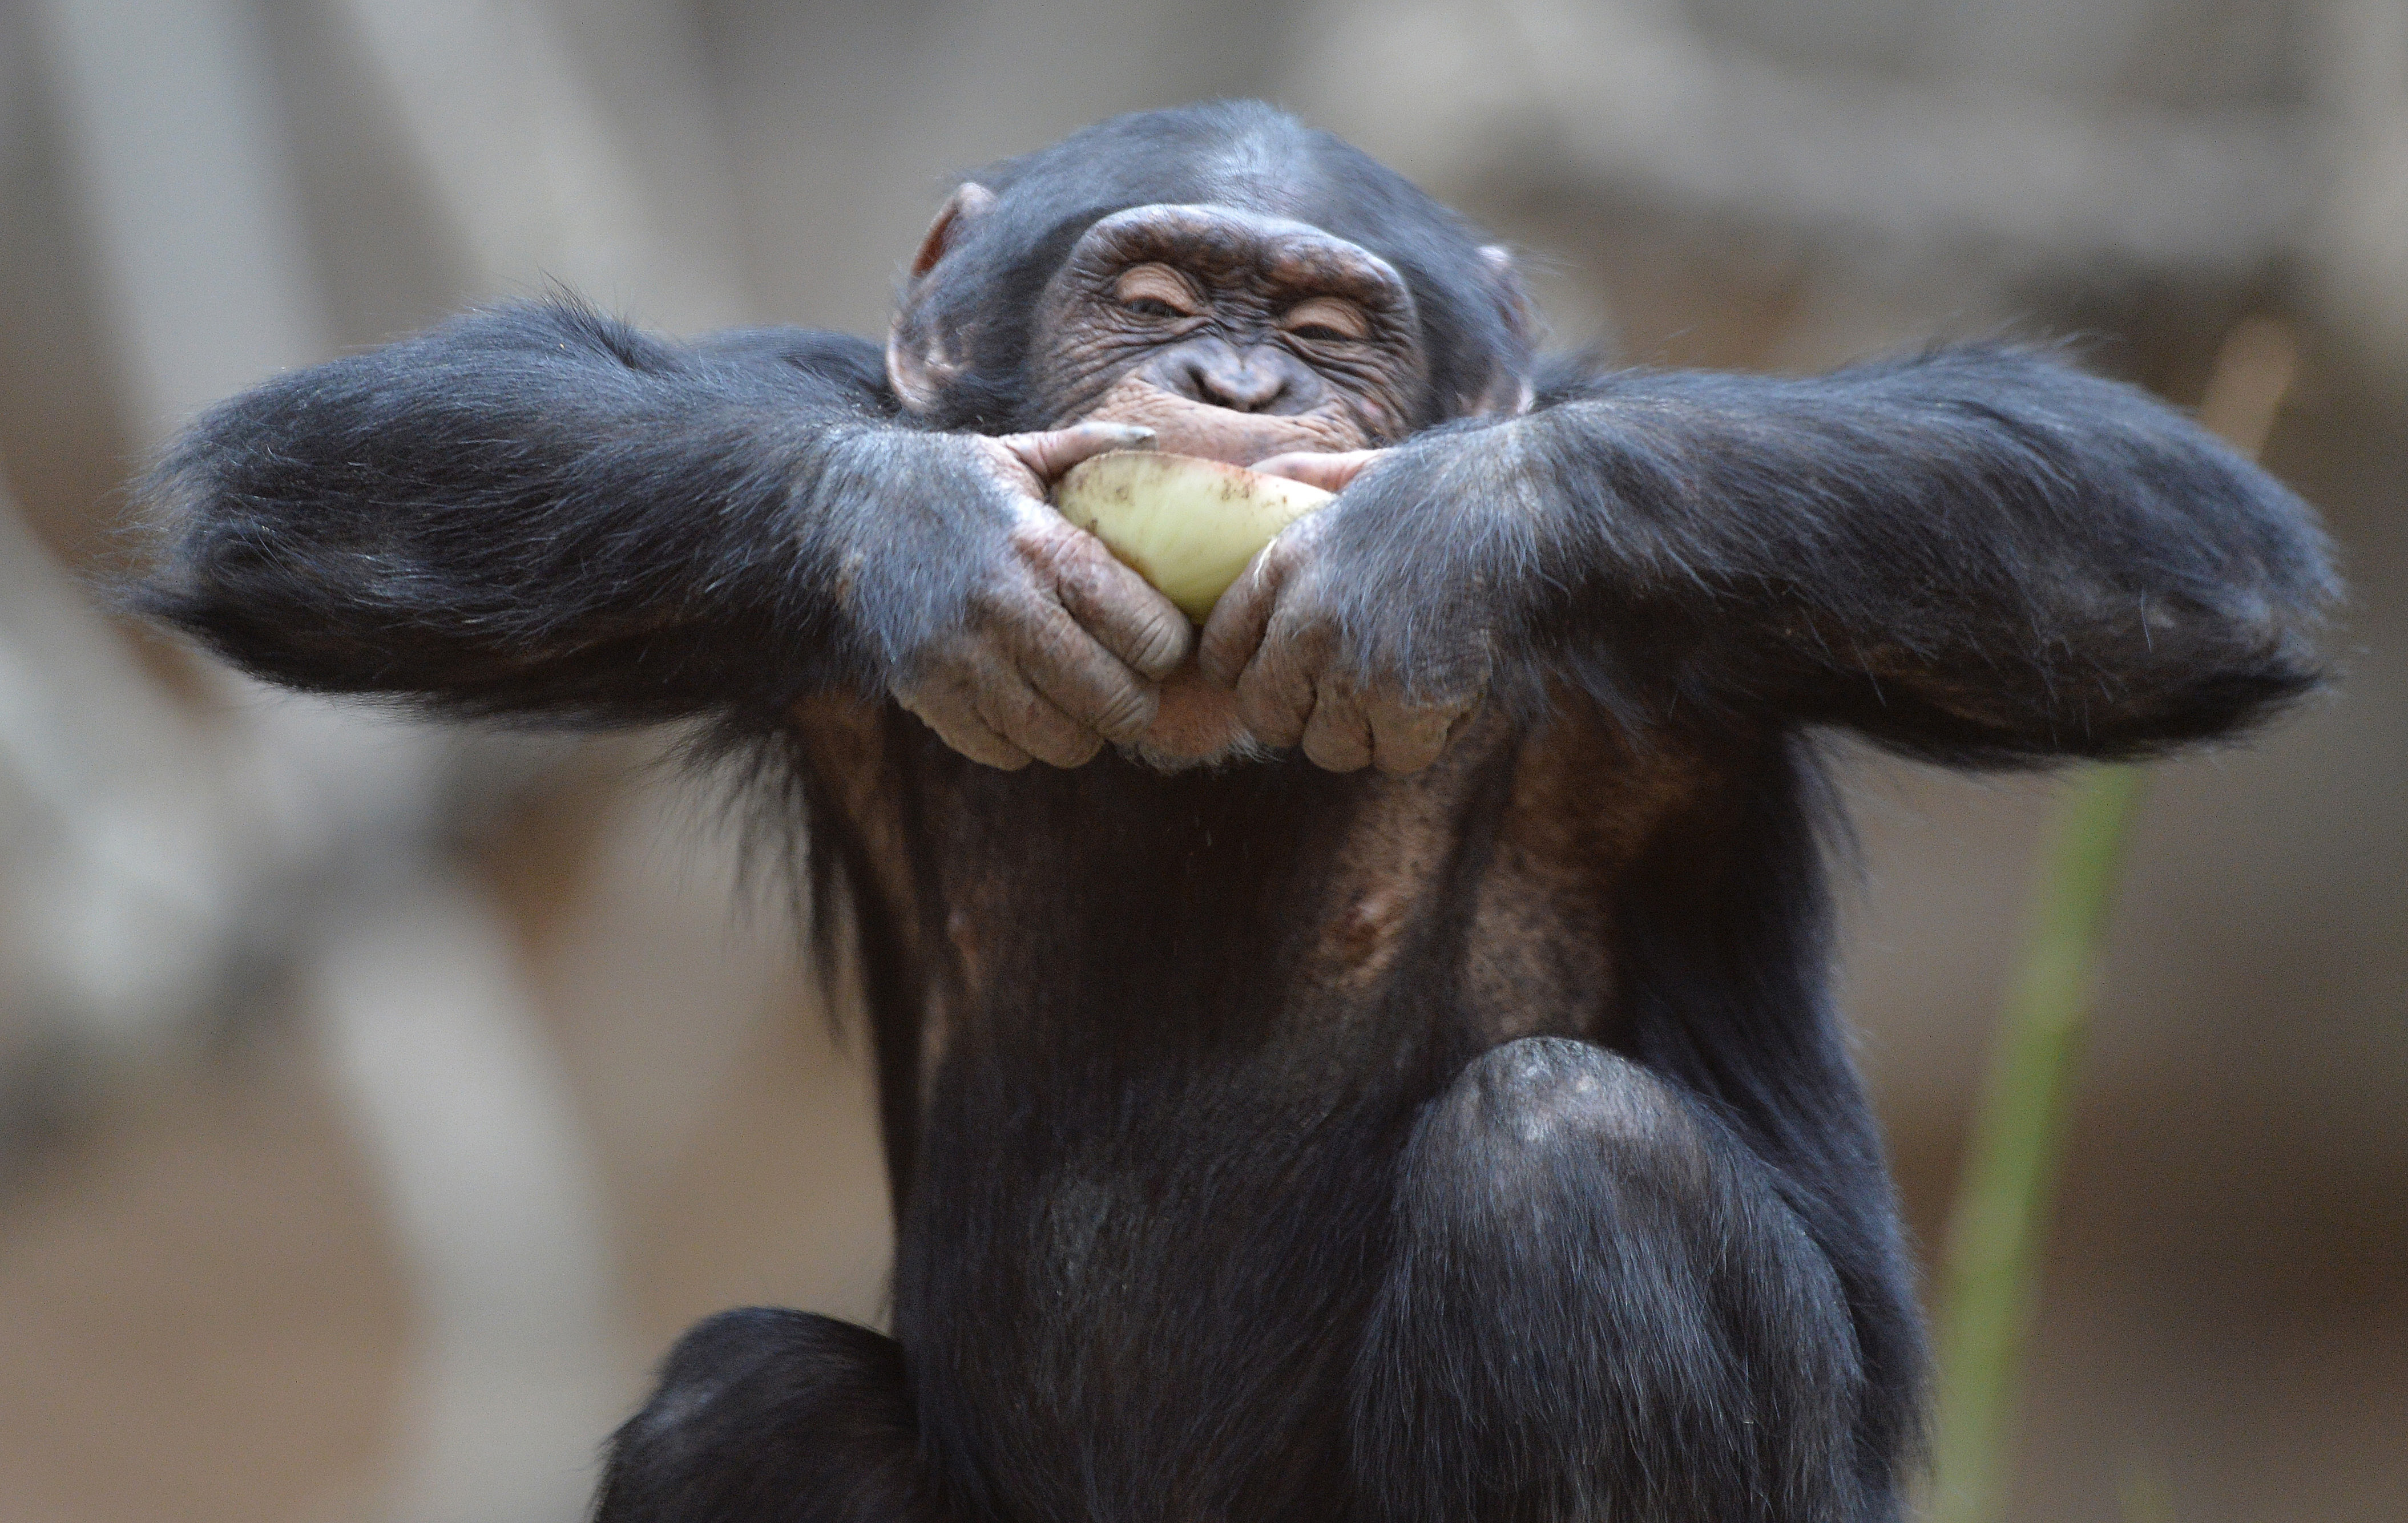 A csimpánzok a széklettől ugyan nem undorodnak, de nem is azért esznek belőle, mert aberráltak